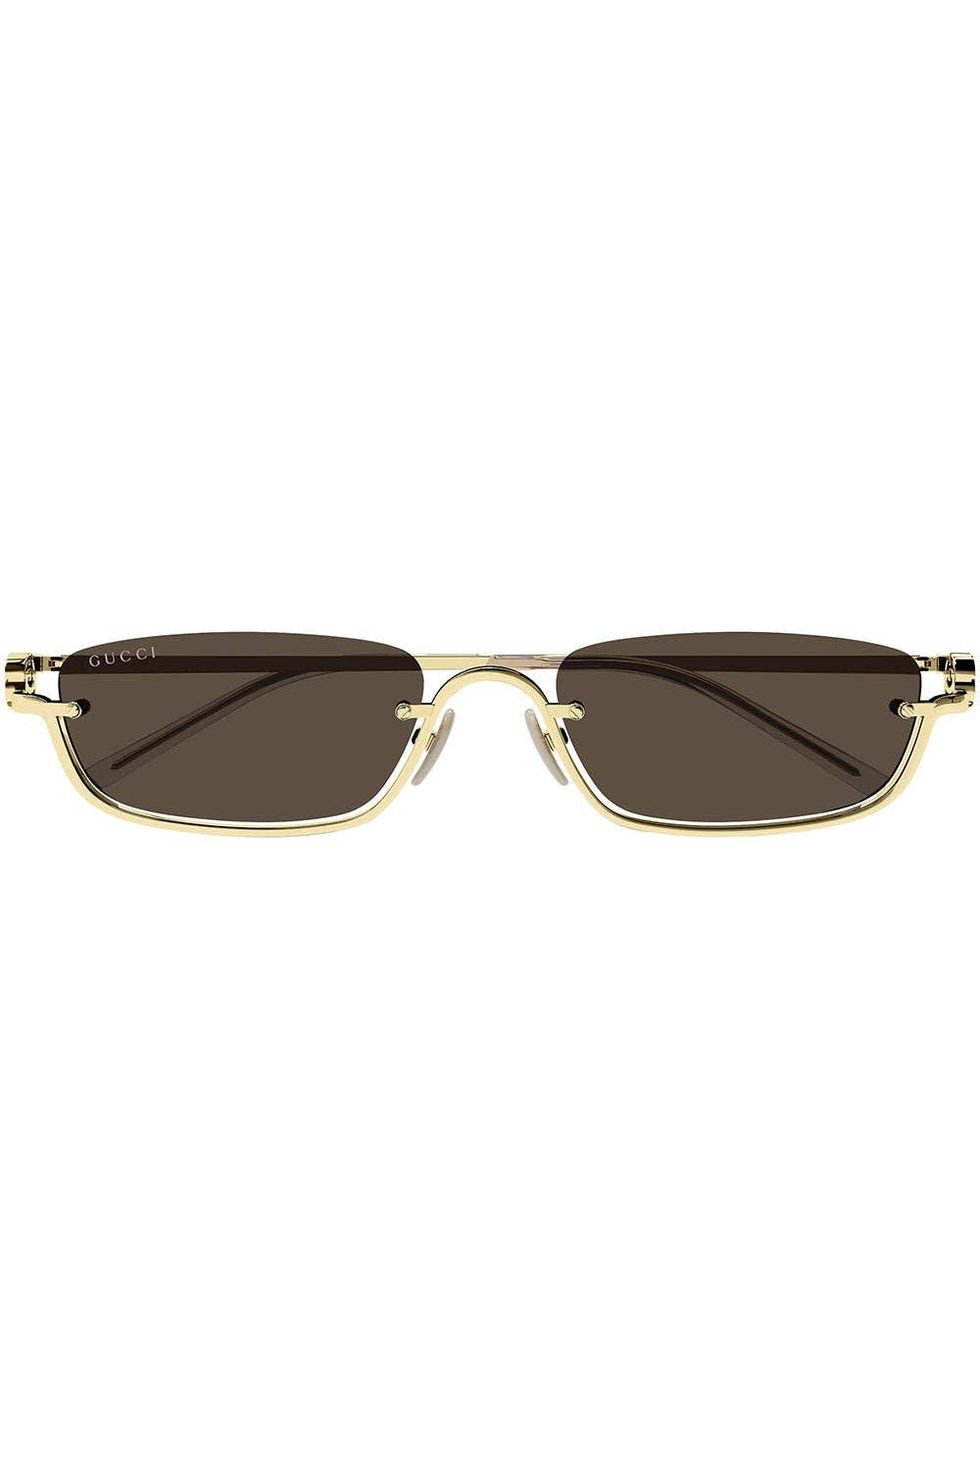 Inverted rectangular sunglasses